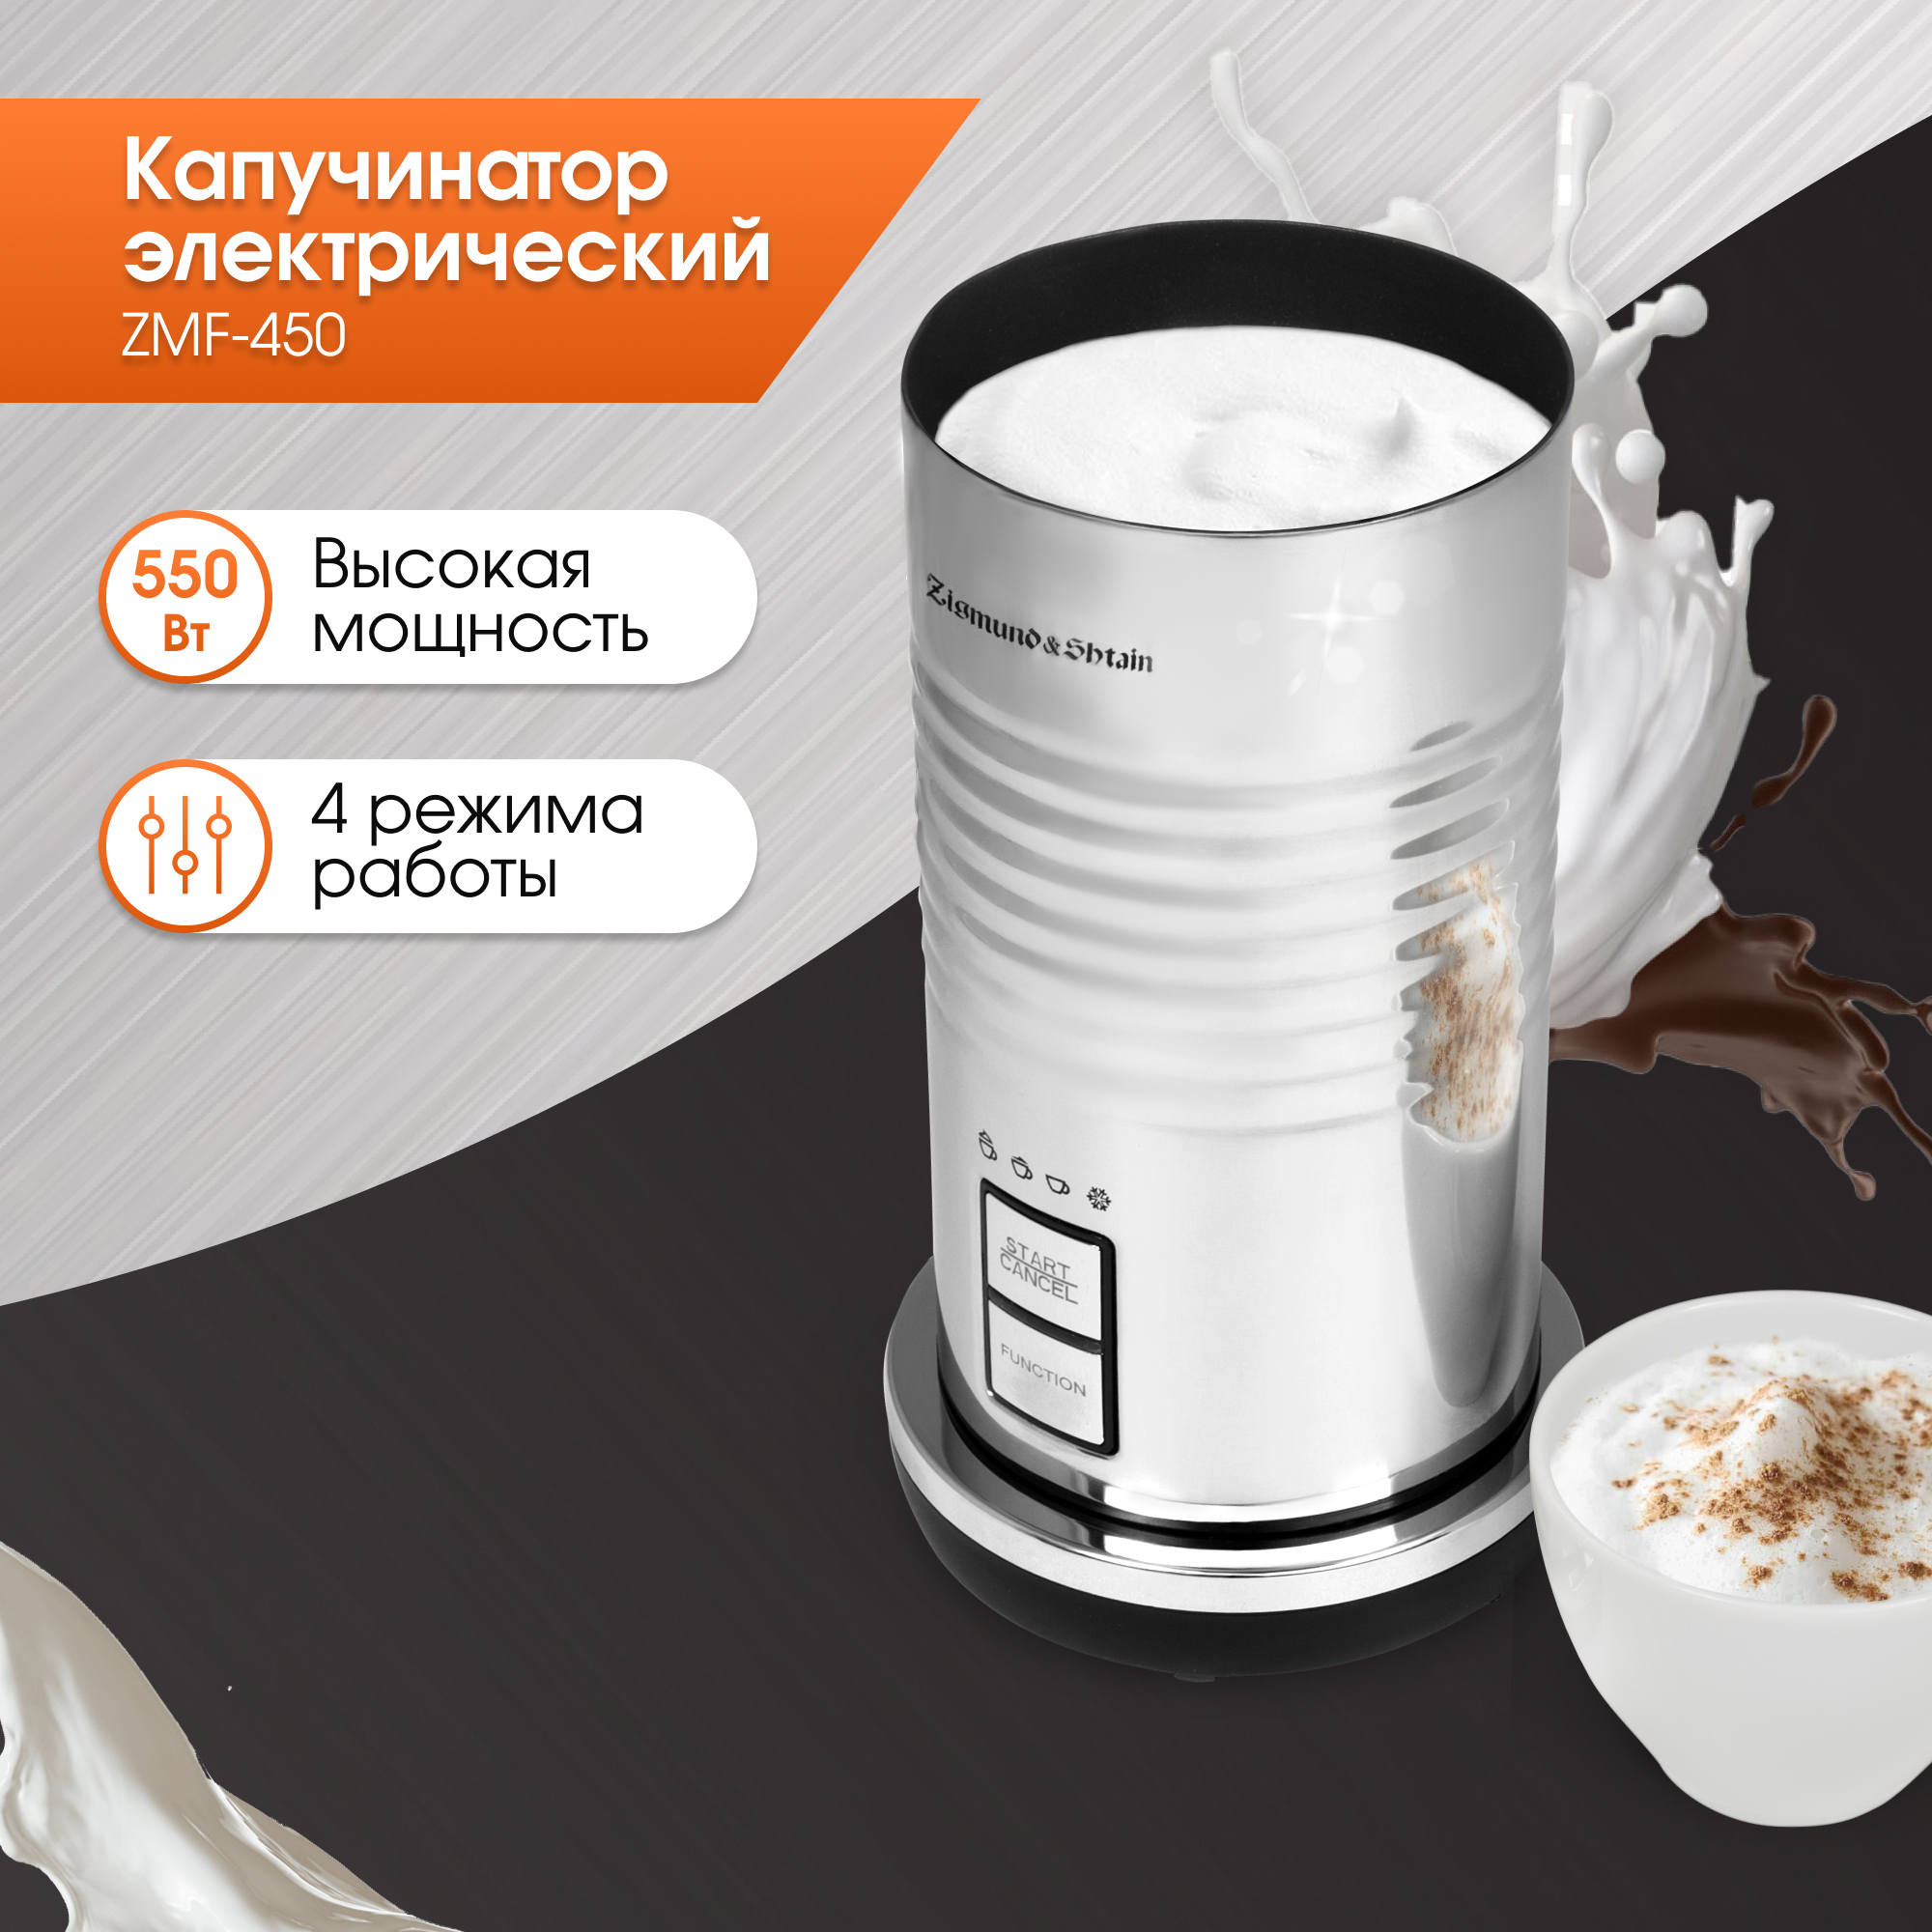 Капучинатор Zigmund & Shtain ZMF-450 серебристый, серый электрический вспениватель молока для вспенивания молока 4 в 1 с вращающейся ручкой пеногенератор для кофе латте капучино